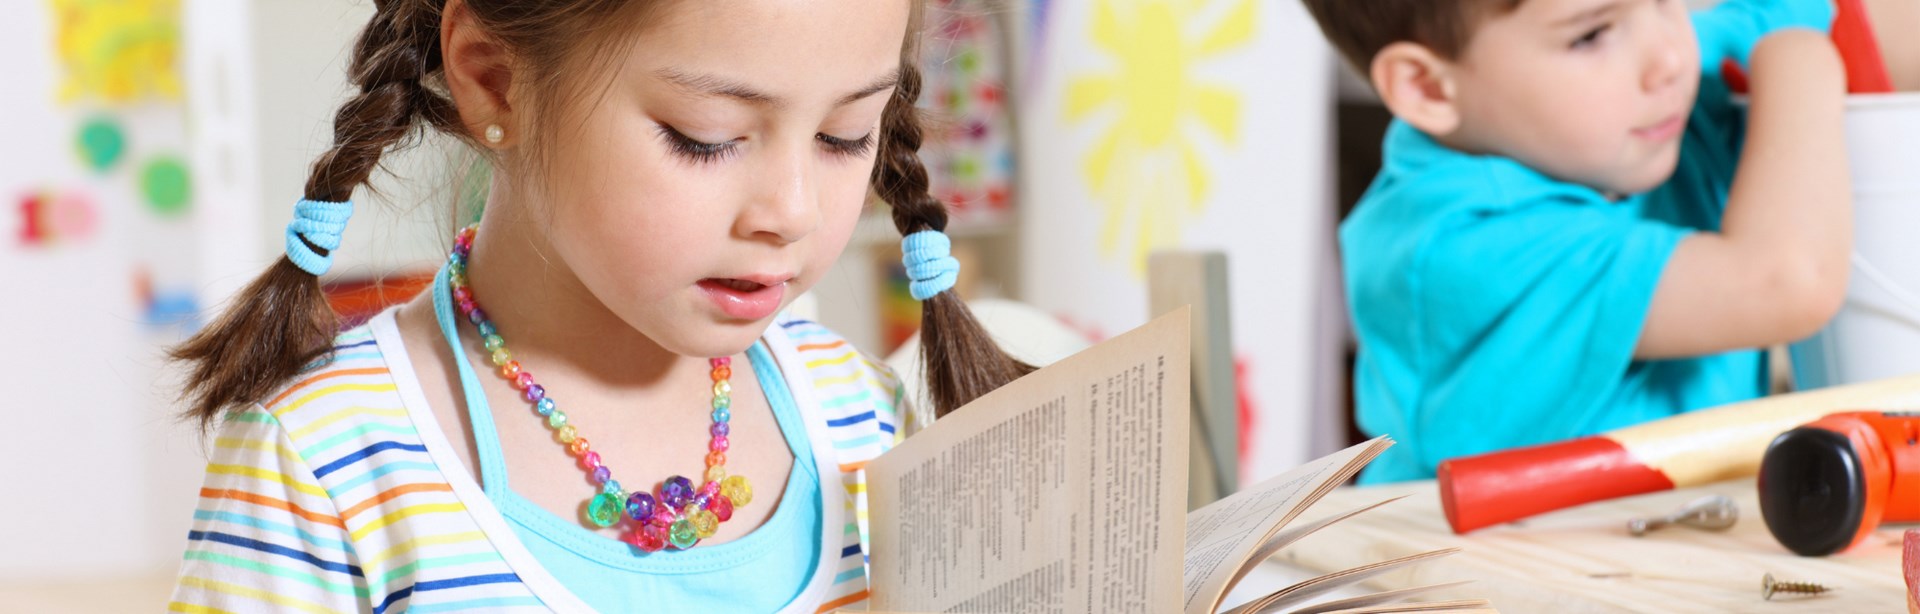 Imagen de portada de curso "Alfabetización Inicial" - Se visualiza una Nena leyendo